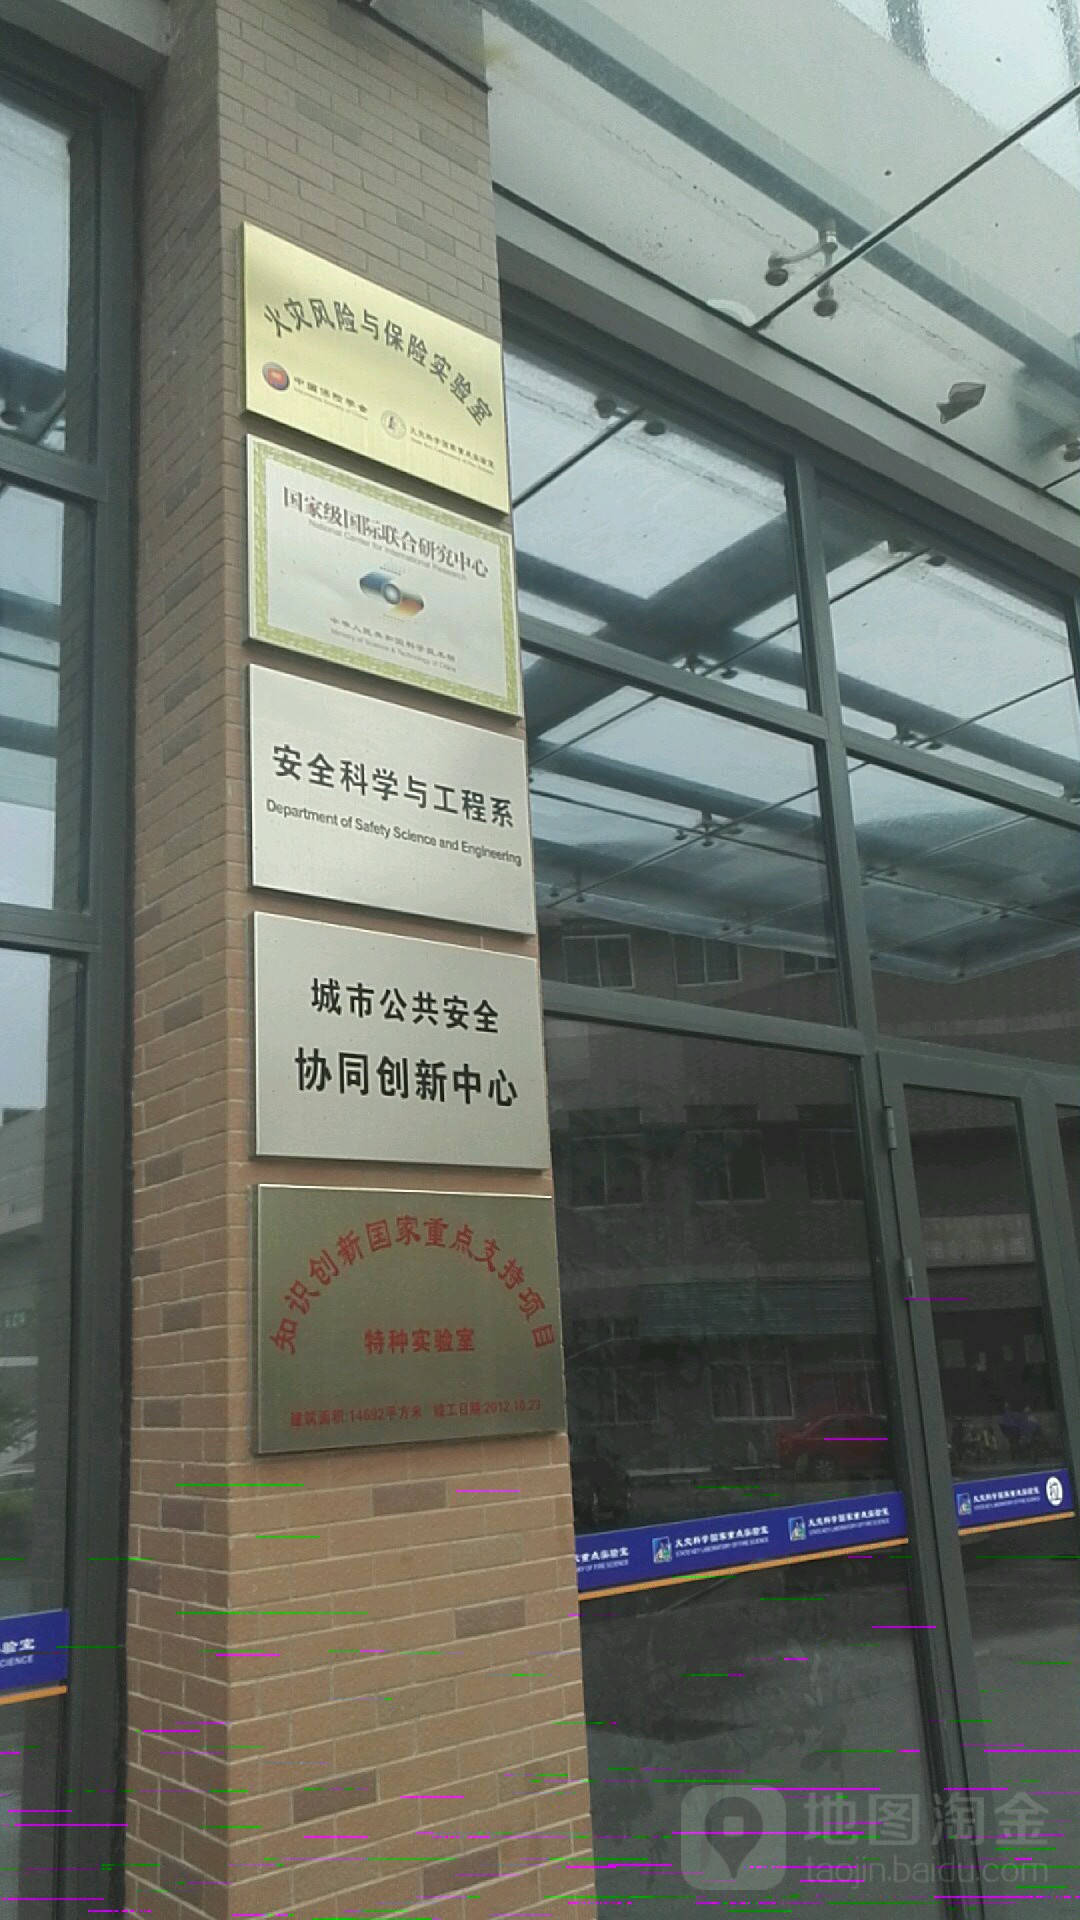 中国科学技术大学(西校区-城市公共安全协同创新中心